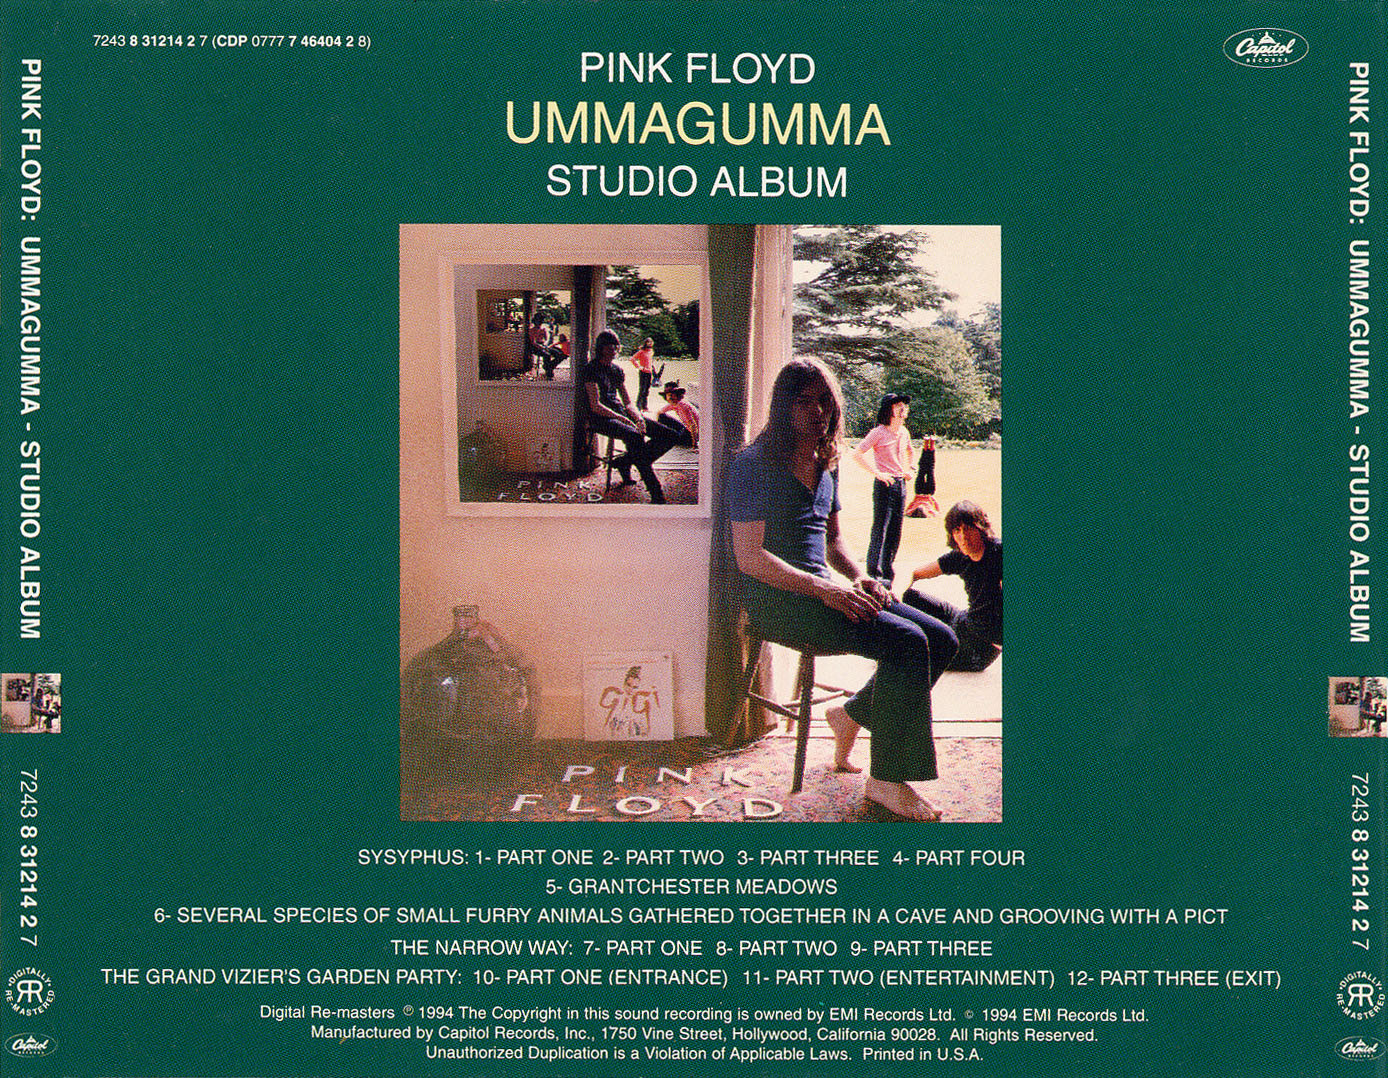 1969 - Ummagumma - Ummagumma - Studio Album - Back.jpg